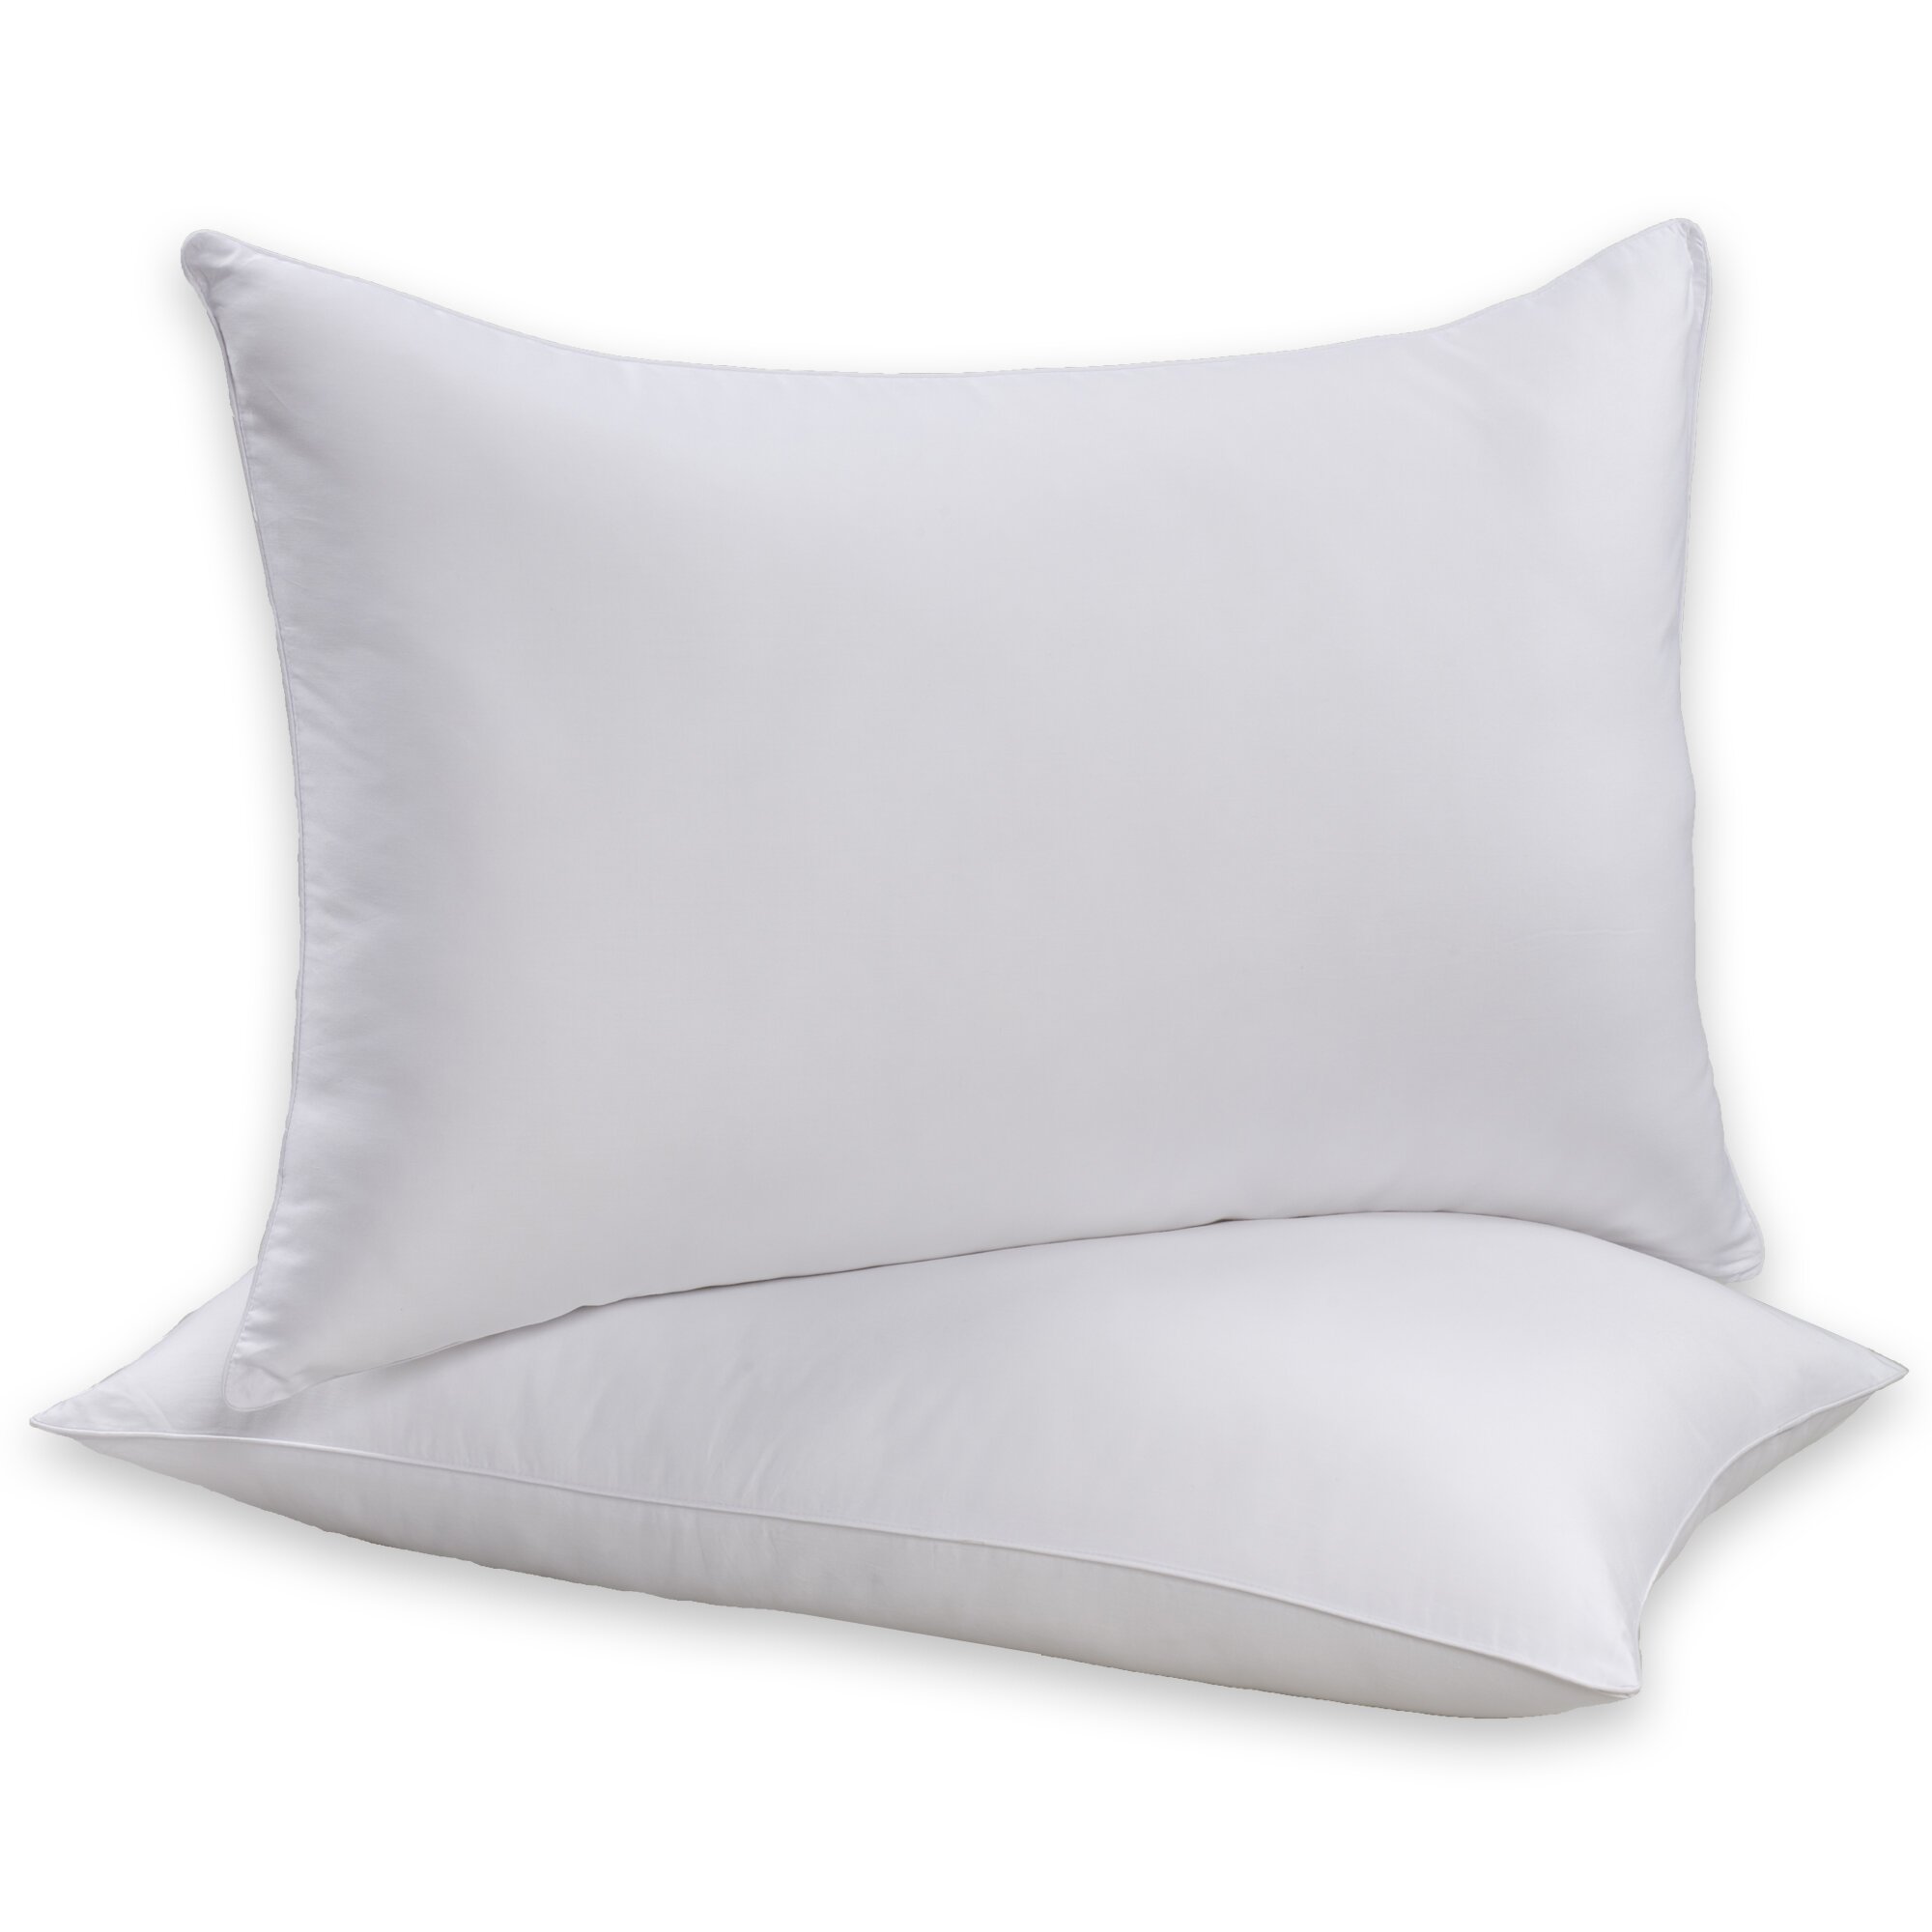 Simmons Beautyrest Allergen Barrier Polyfill Pillow & Reviews | Wayfair